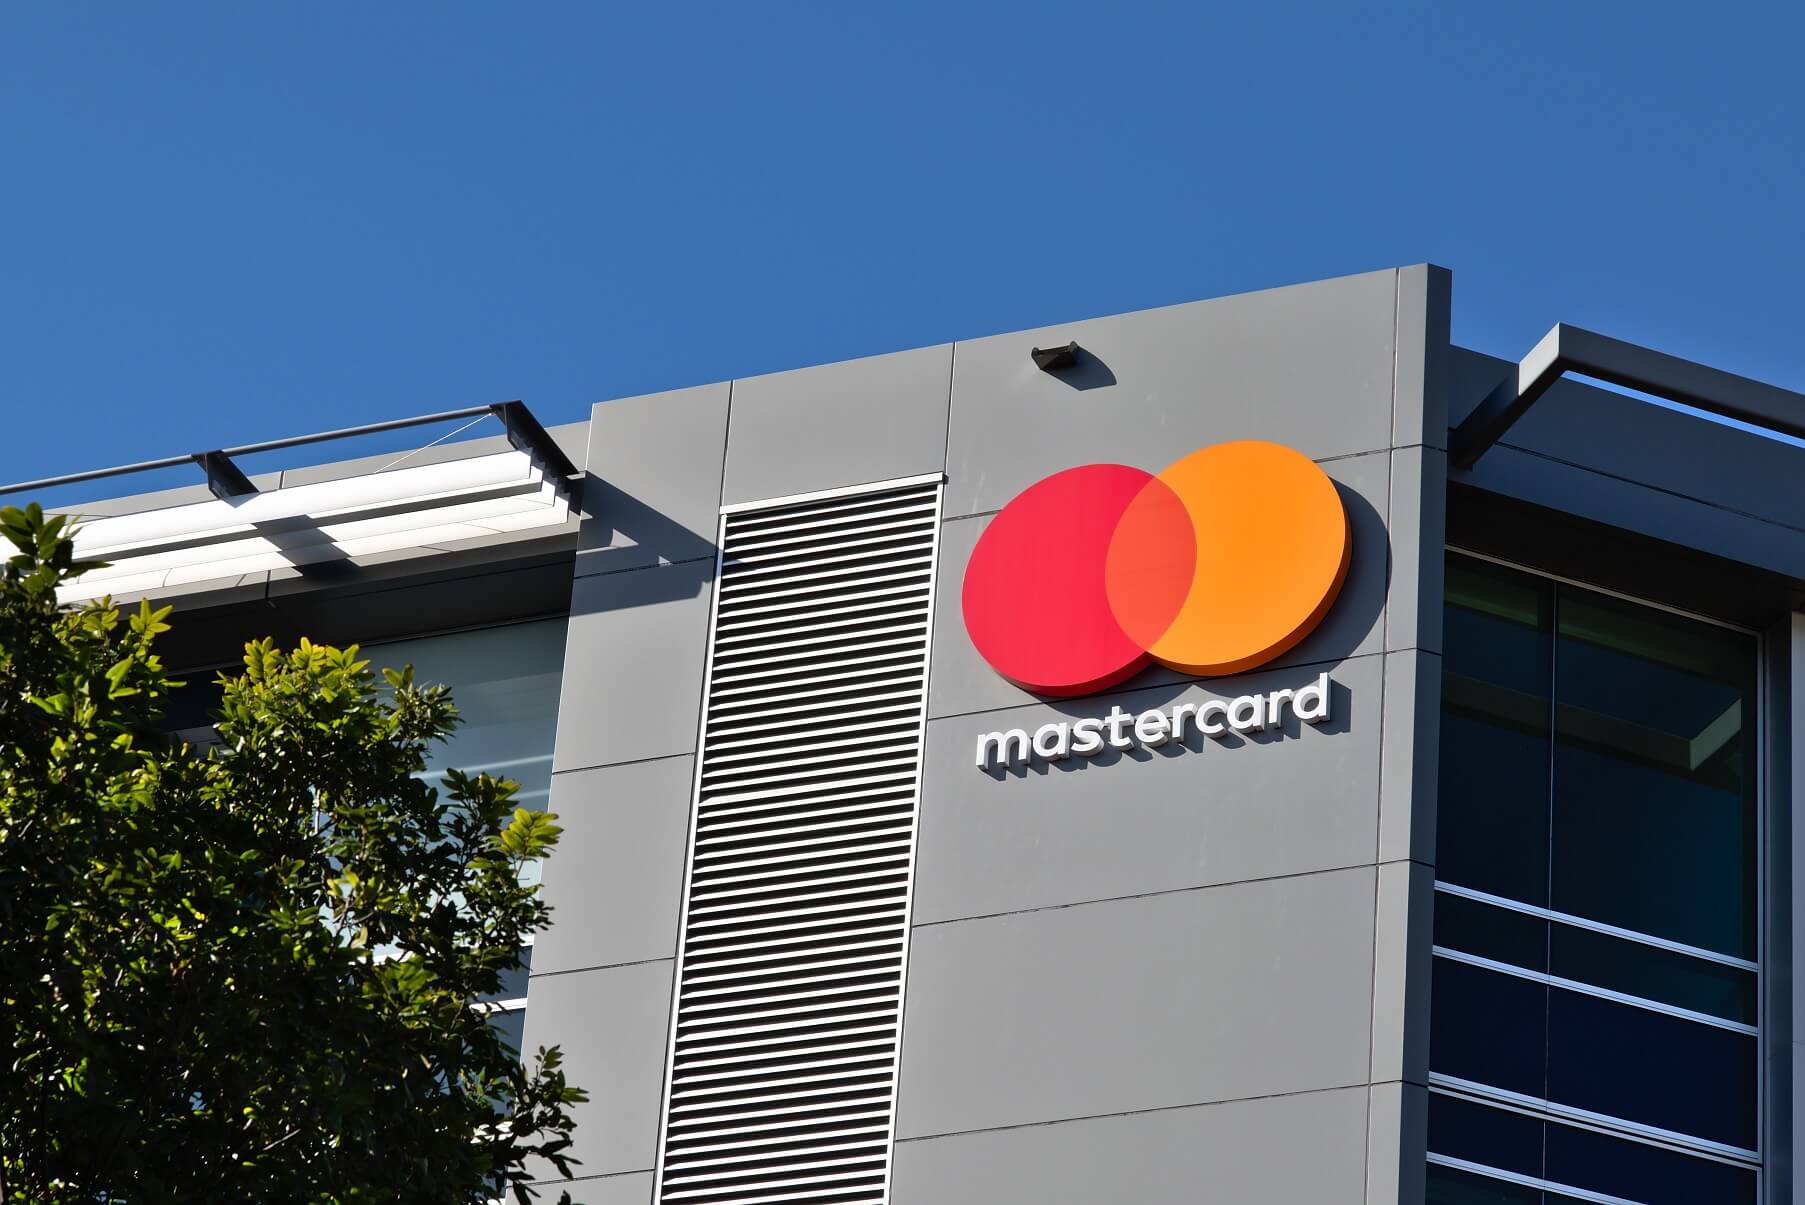 Le directeur de Mastercard affirme que la blockchain peut apporter de la valeur aux services financiers